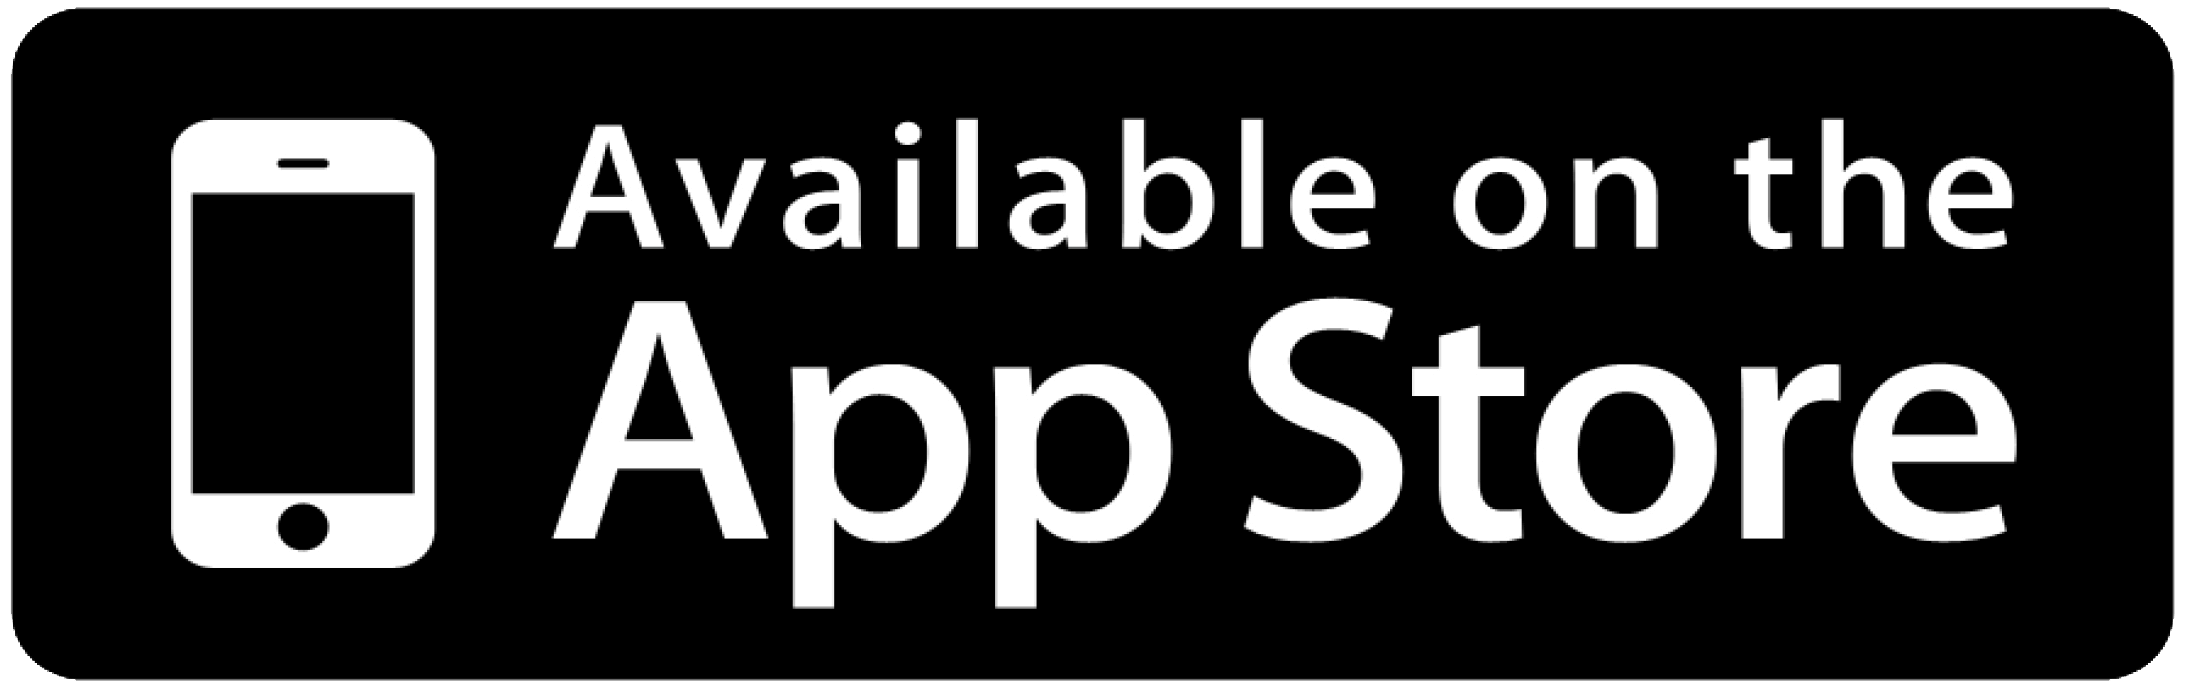 app_download